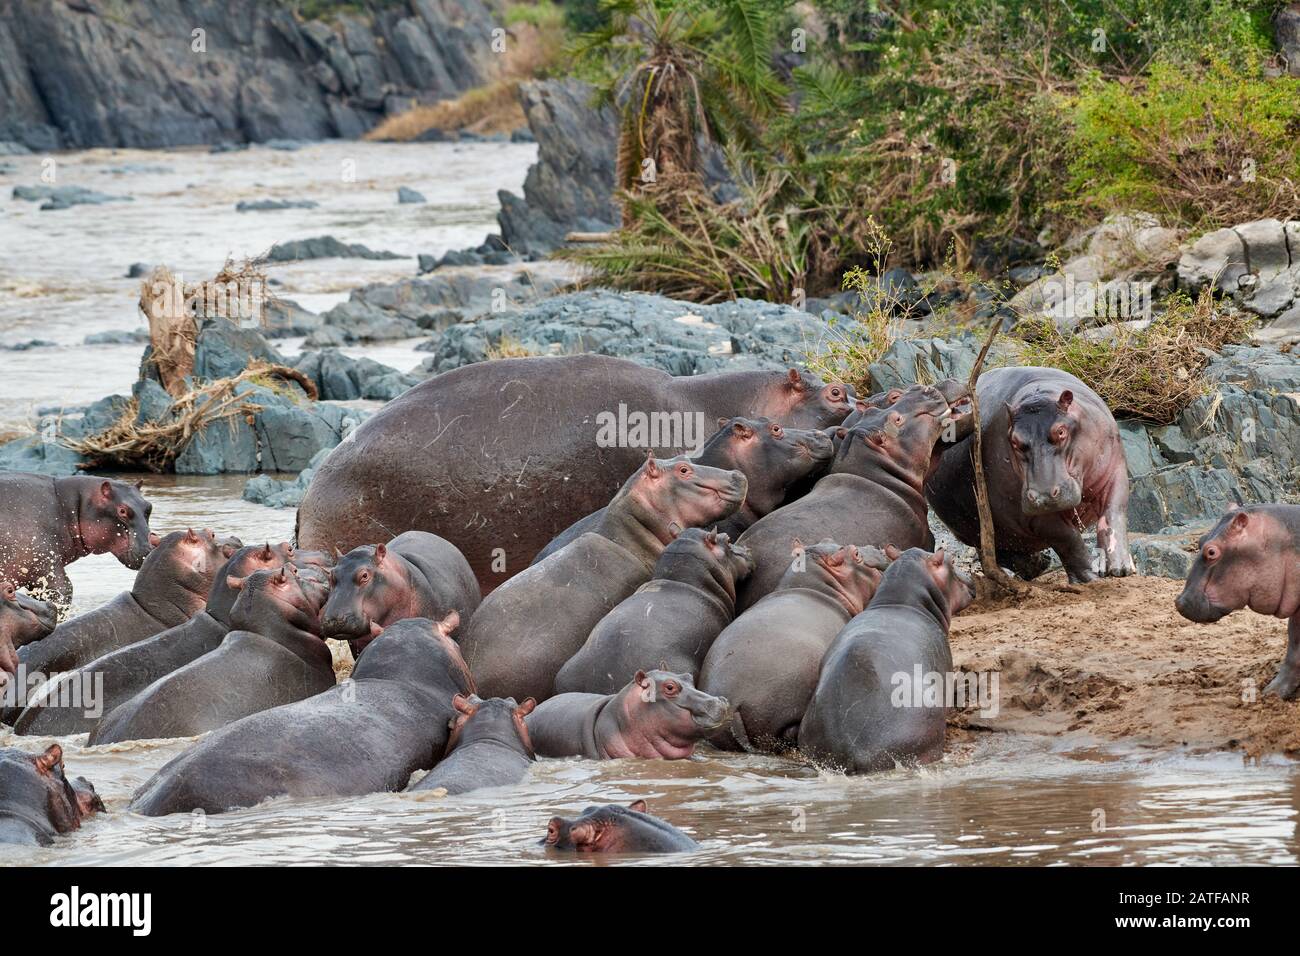 Lotta con Hippos (Hippopotamus anfibio) nella famosa Hippo-Pool del Parco Nazionale Serengeti, sito patrimonio dell'umanità dell'UNESCO, Tanzania, Africa Foto Stock